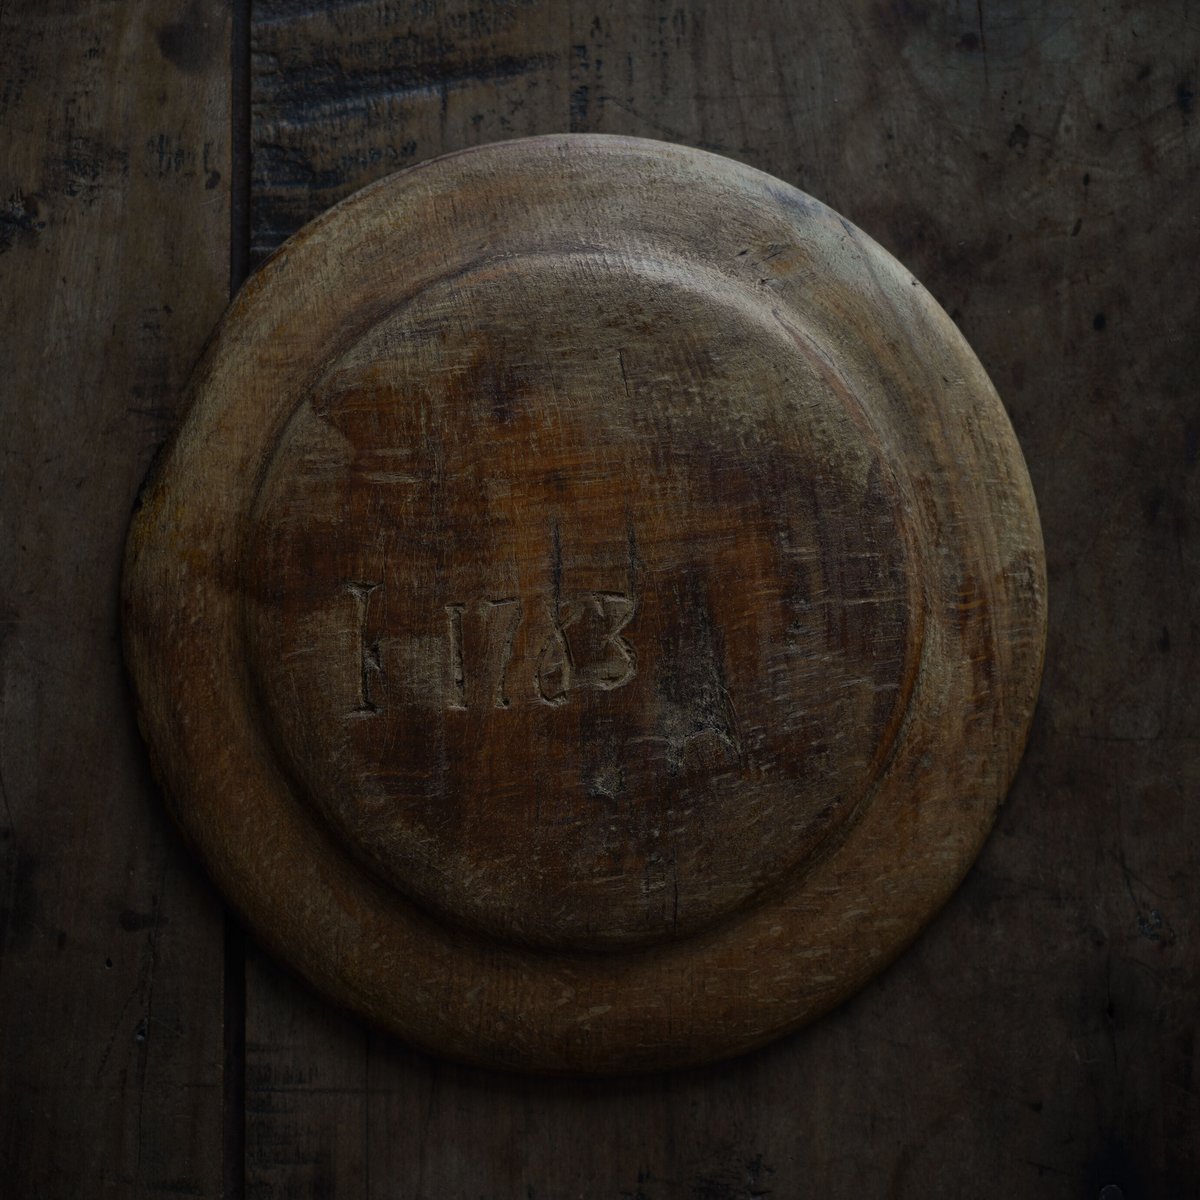 18世紀 スウェーデン木皿 / Swedish Wooden Rim Plate / Sweden 18th C. / d